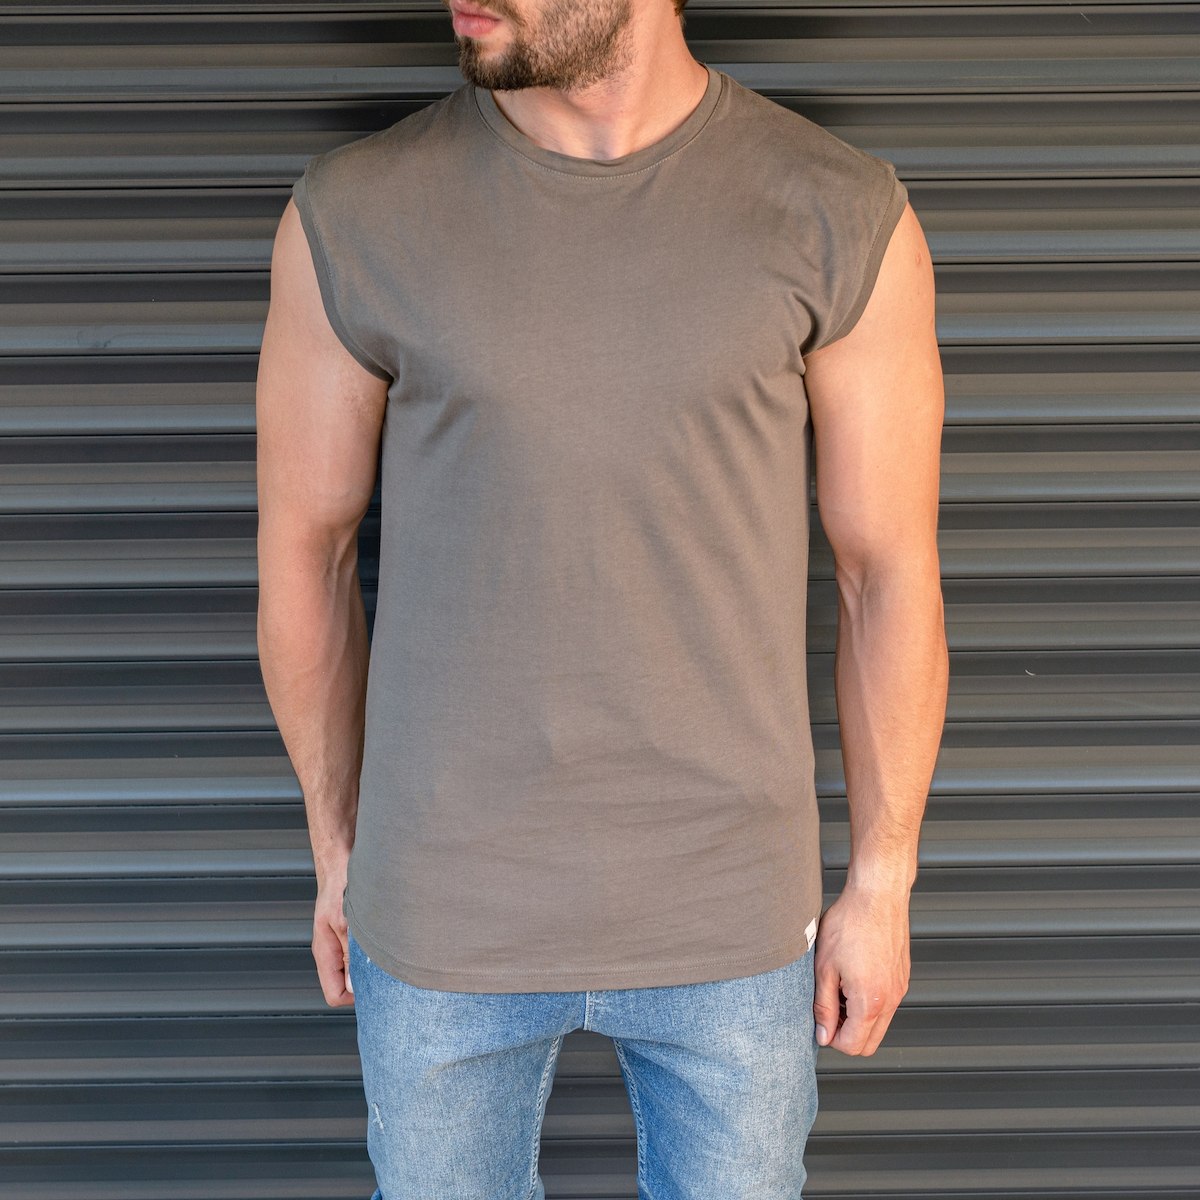 Men's Basic Sleeveless T-Shirt In Khaki - 1